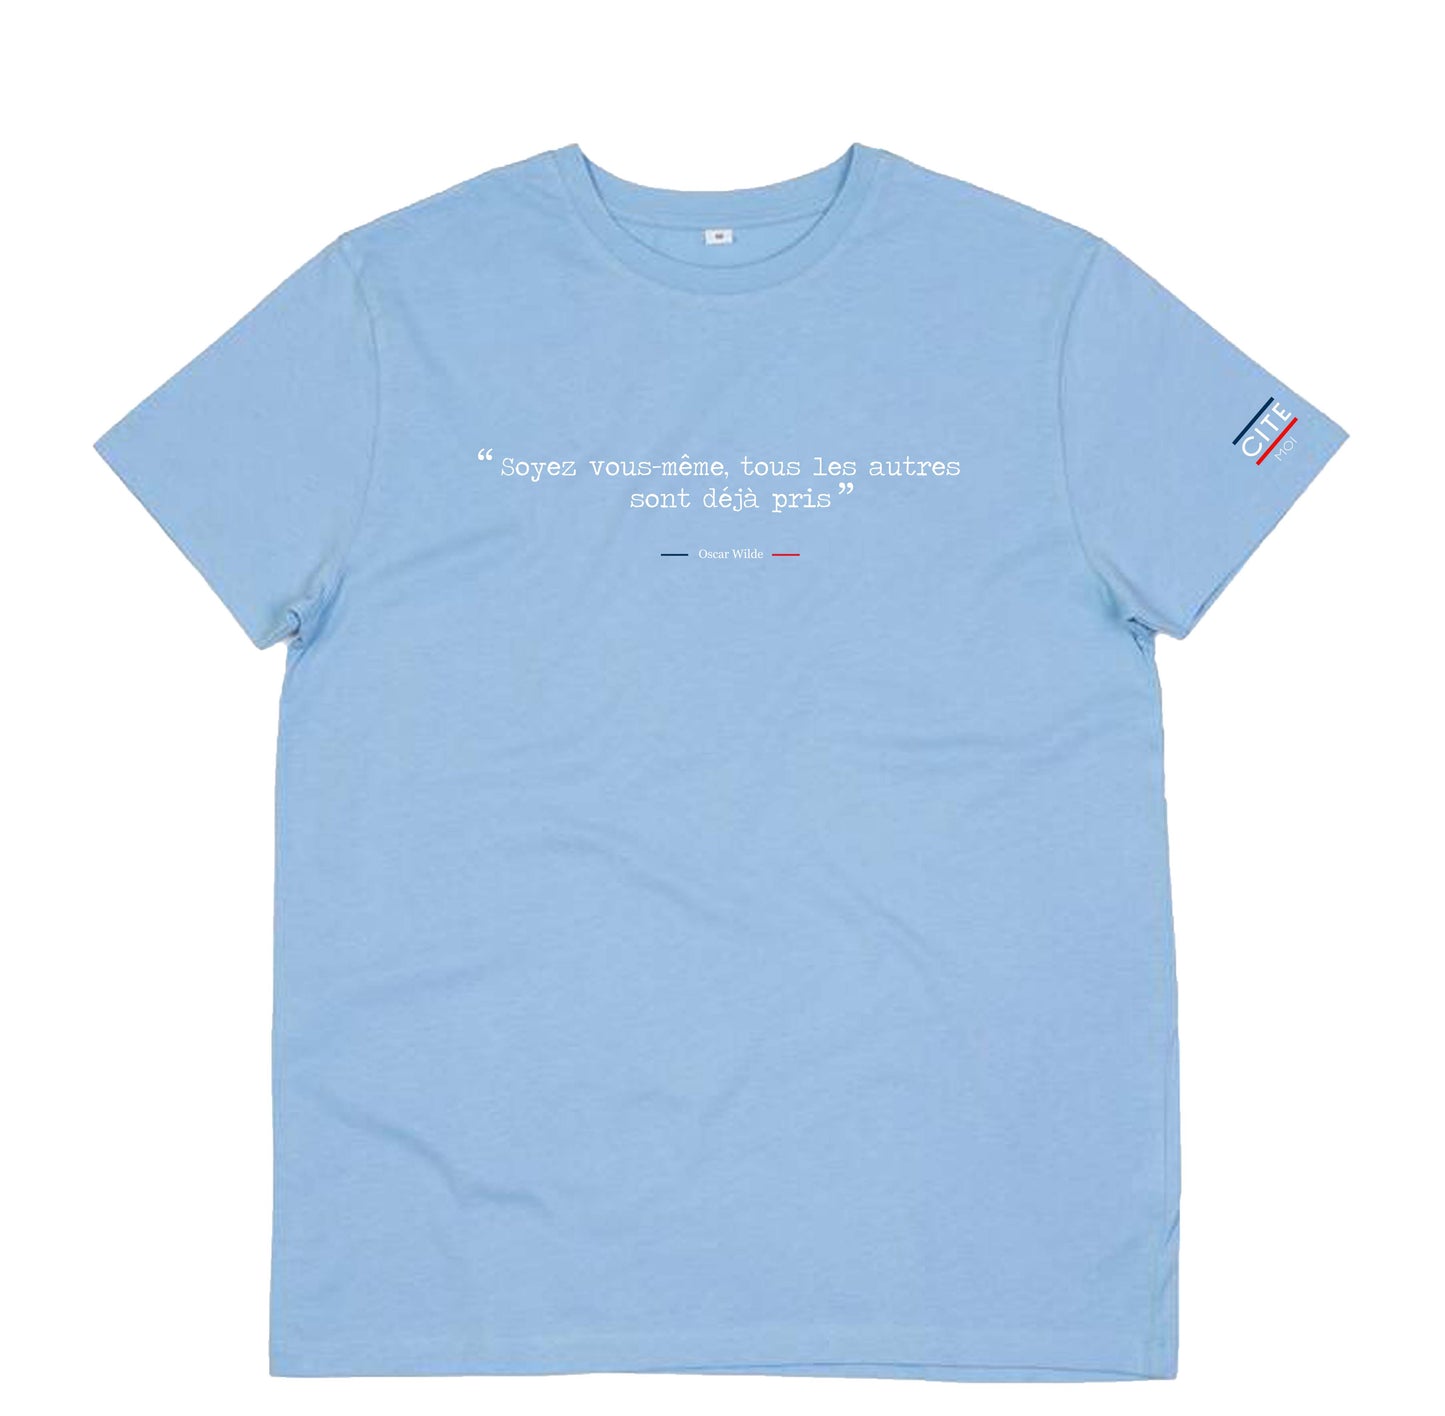 T-shirt homme "Soyez vous-même, tous les autres sont déjà pris" - Oscar Wilde